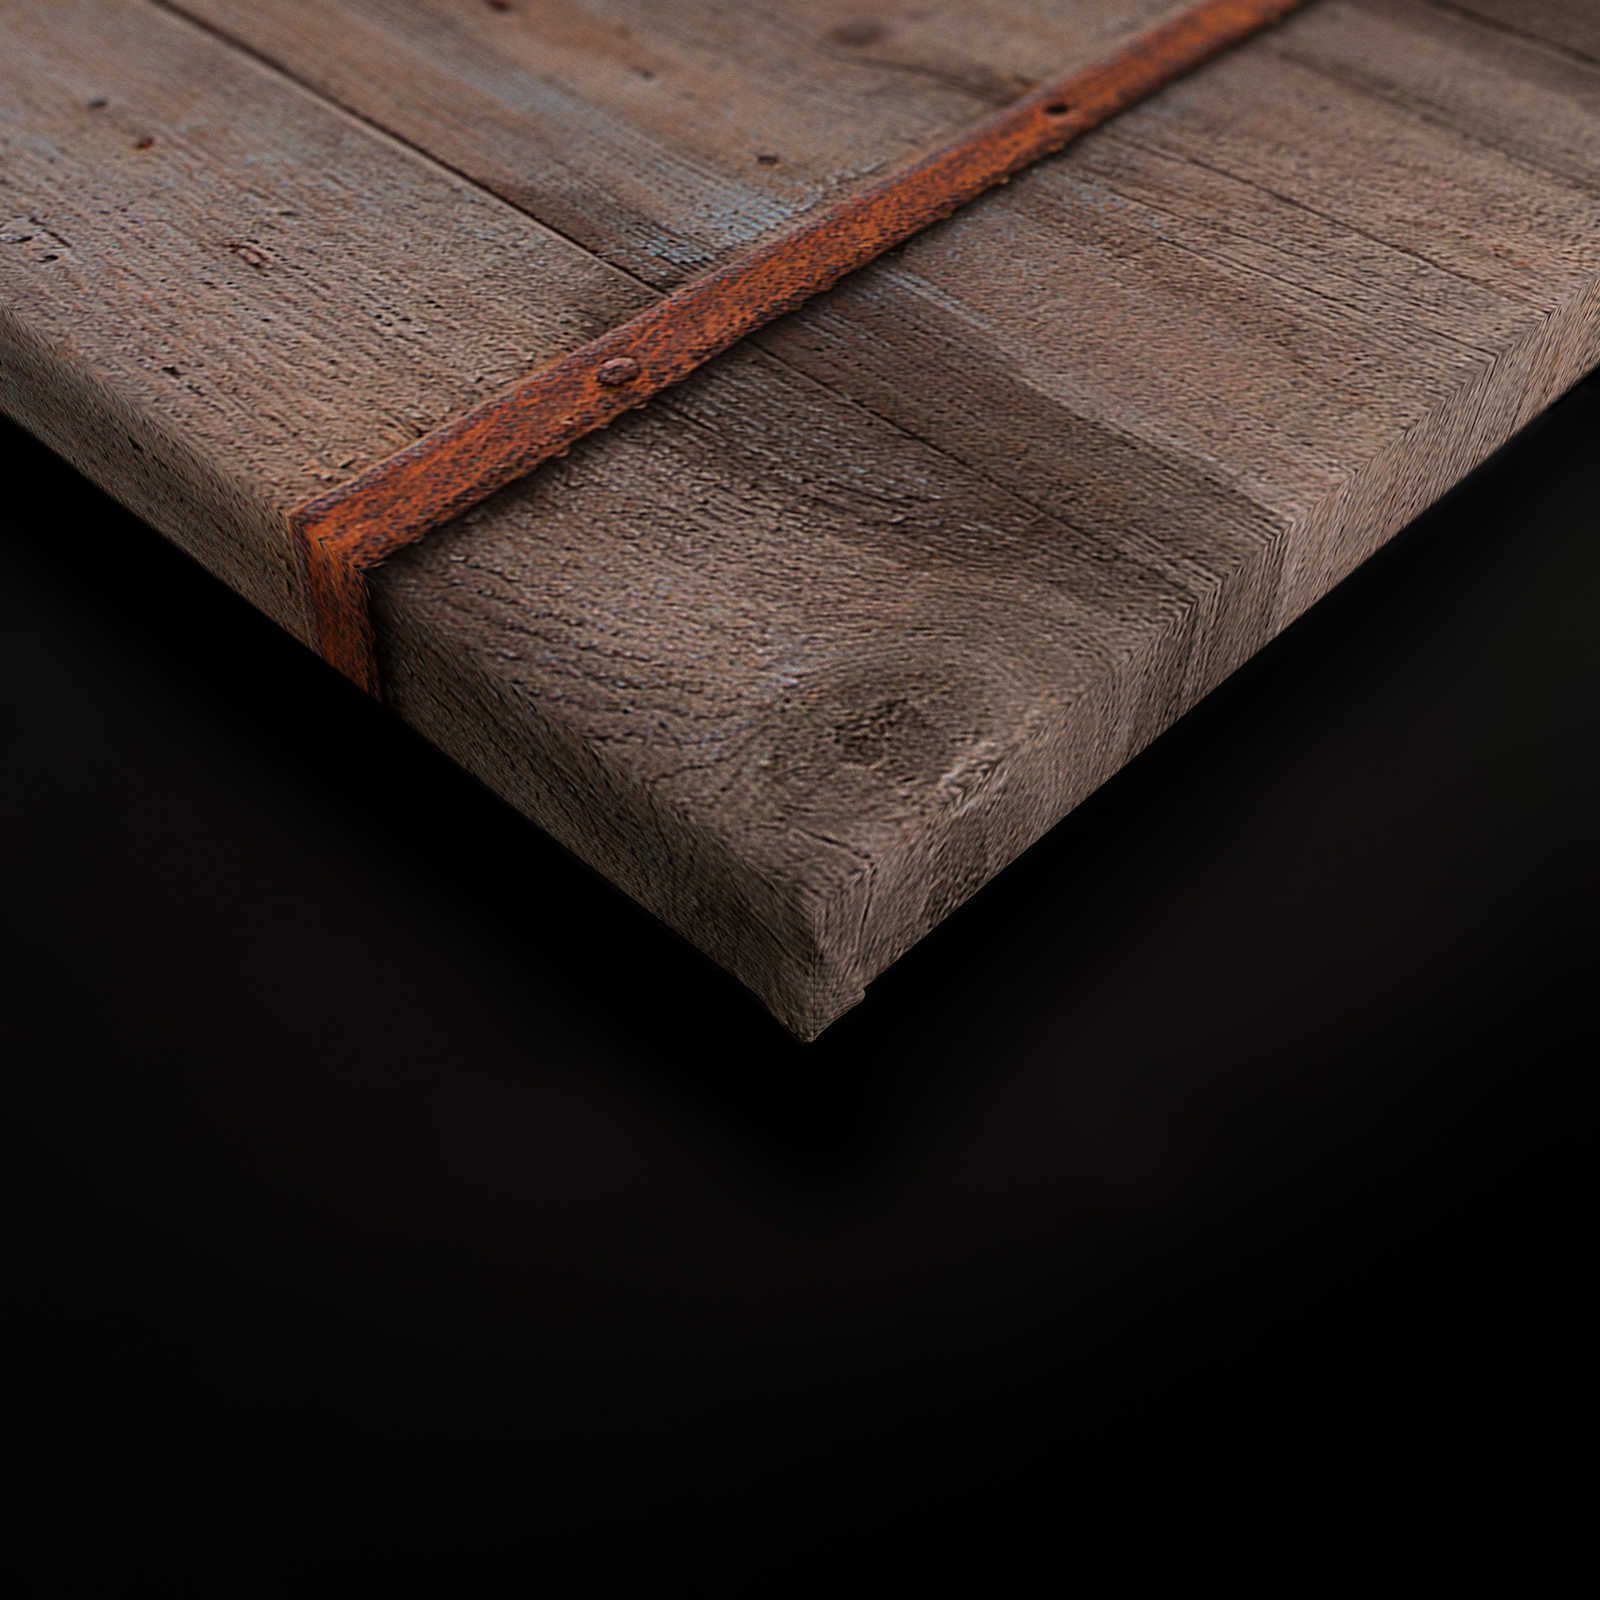             Tela di legno che dipinge la porta del fienile usata - 0,90 m x 0,60 m
        